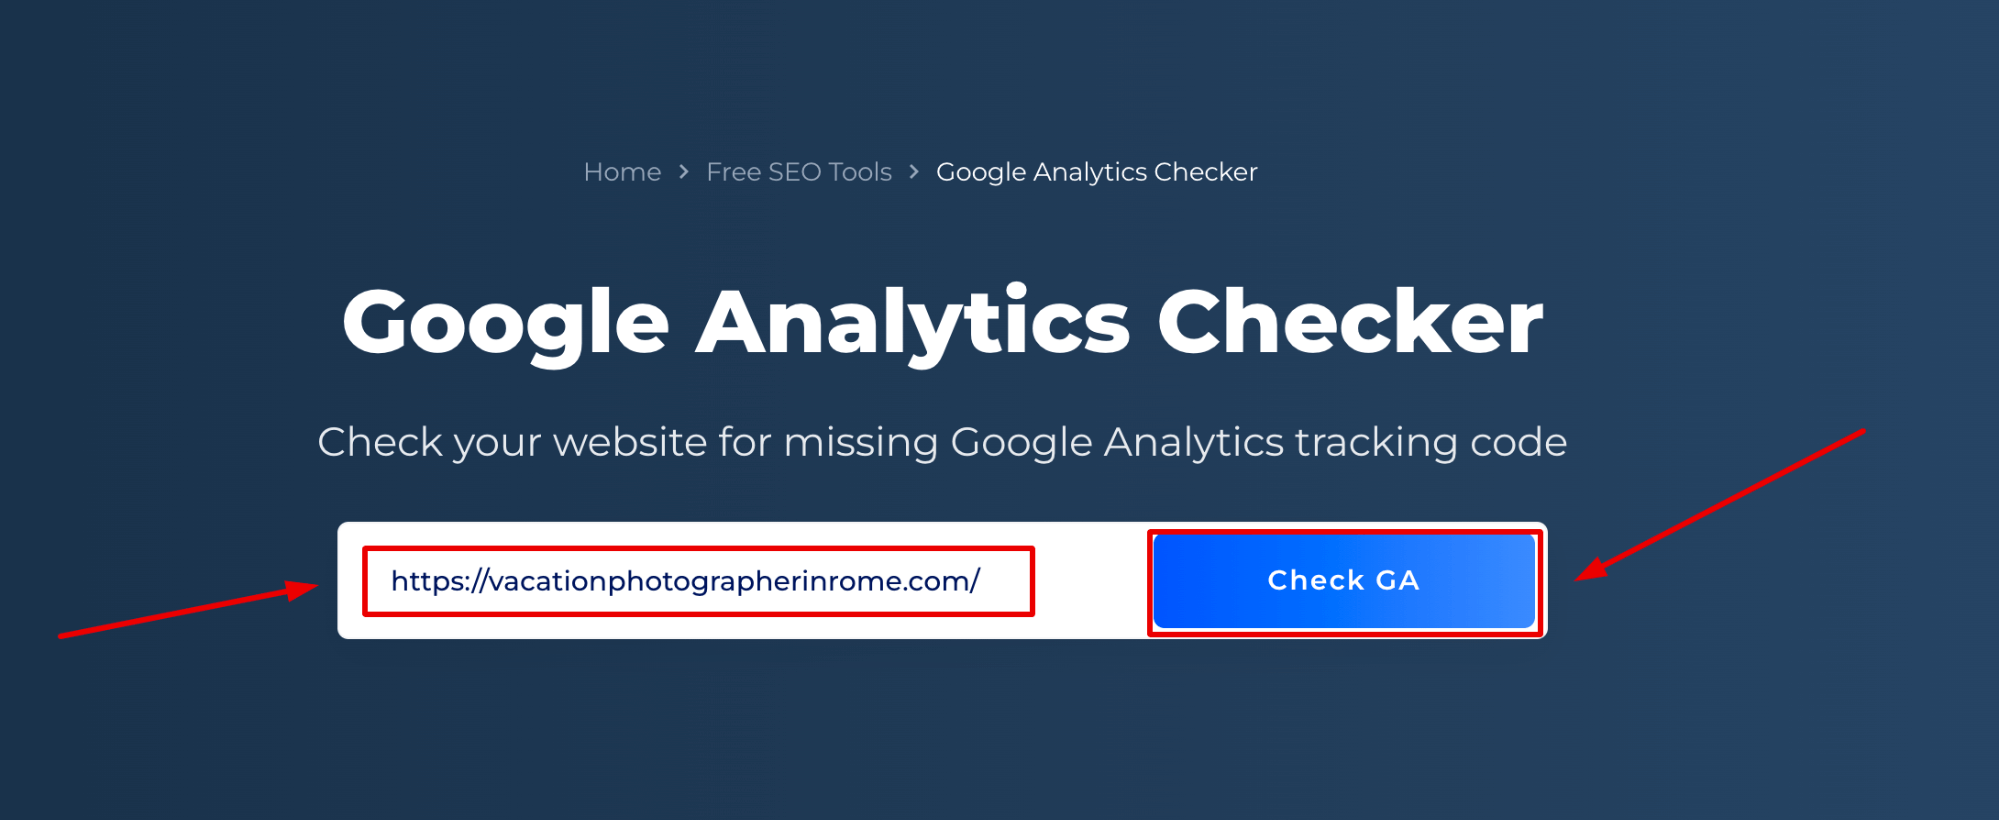 Verificador do Google Analytics